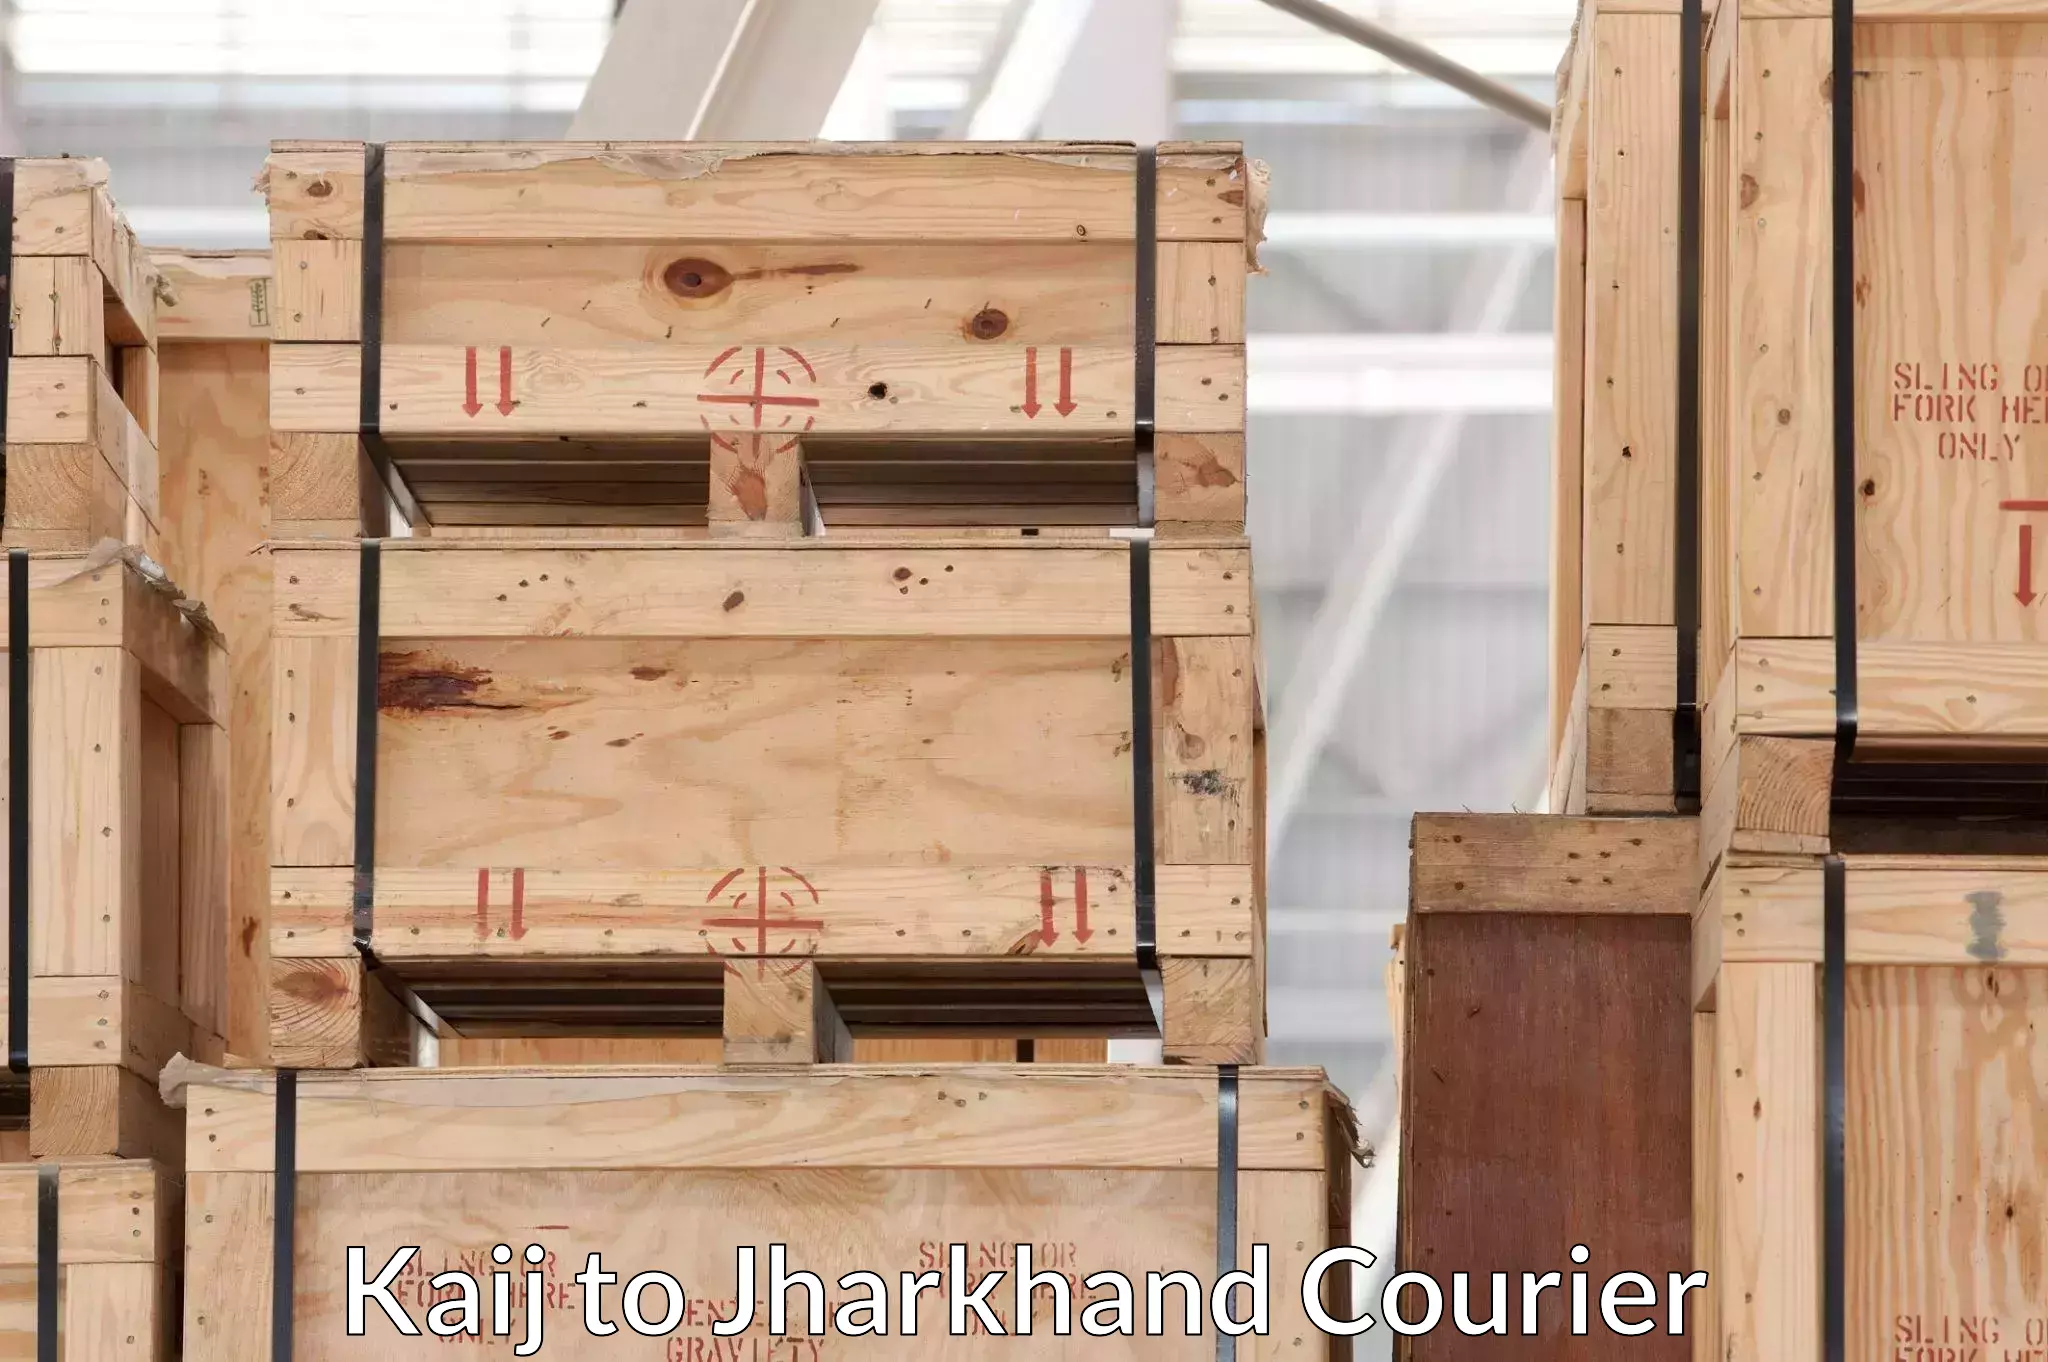 Furniture moving experts Kaij to Tamar